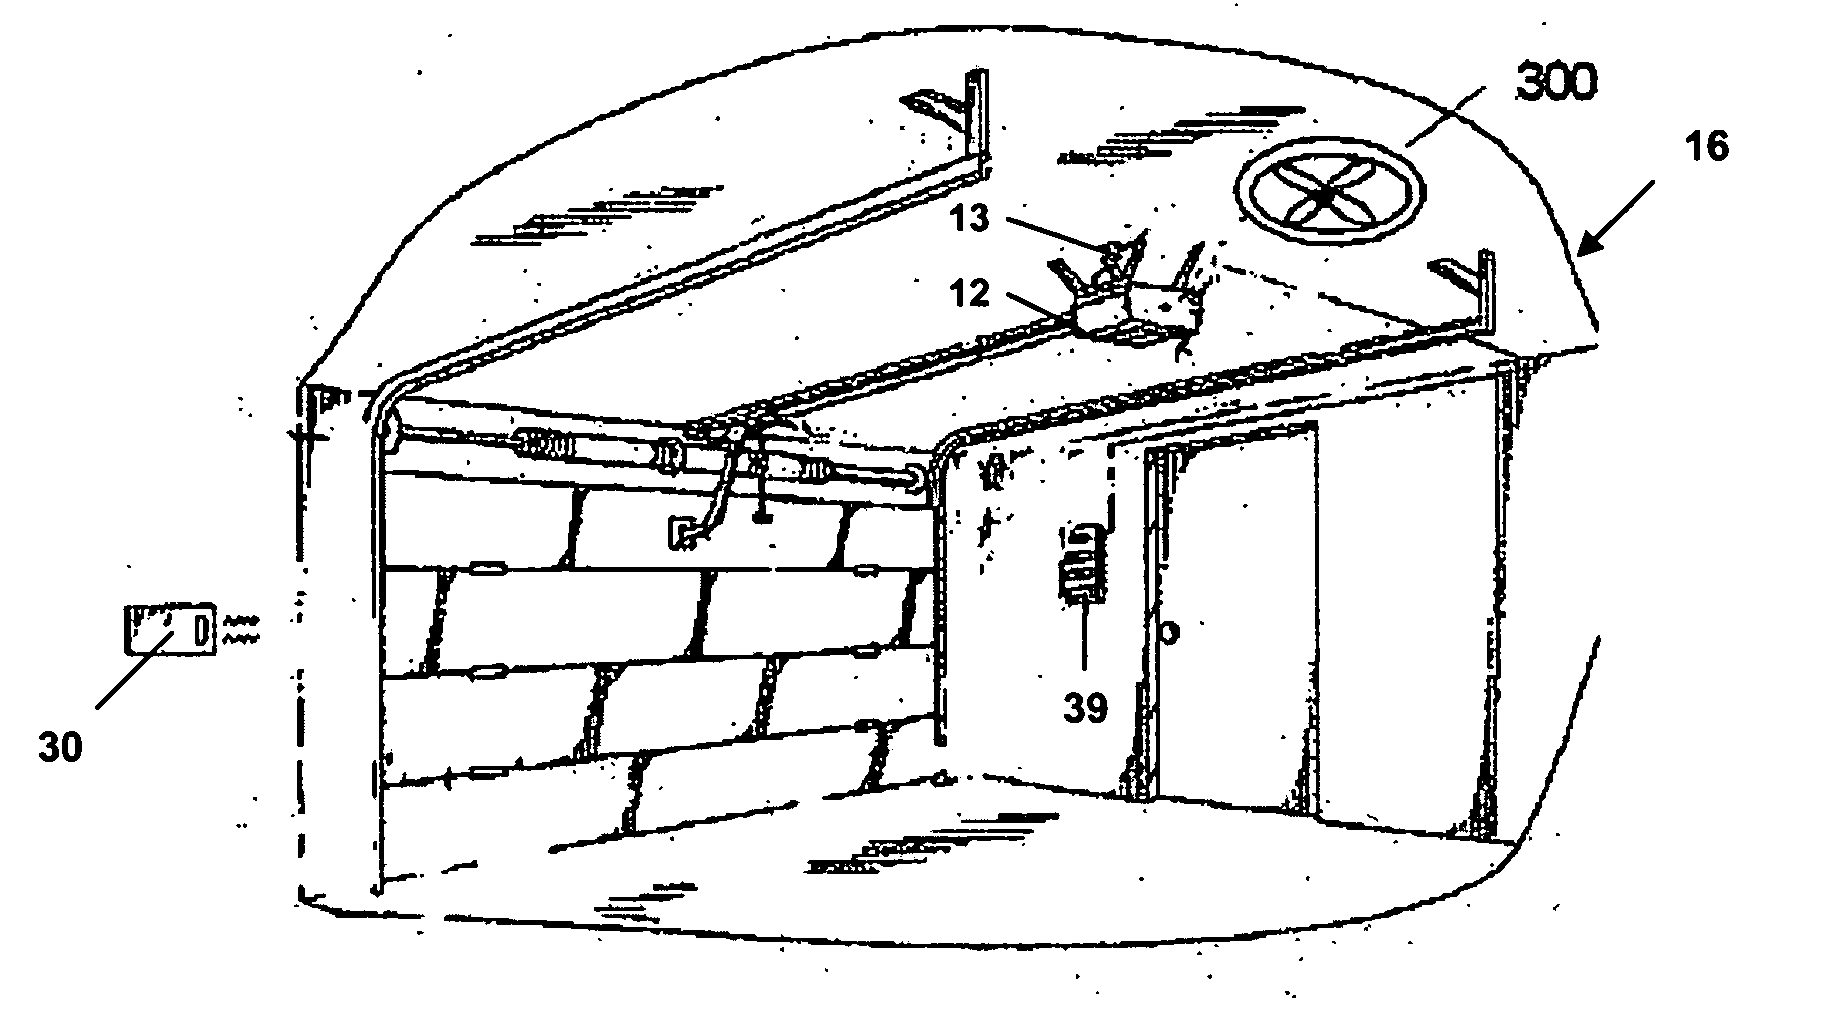 Ventilation system for a garage